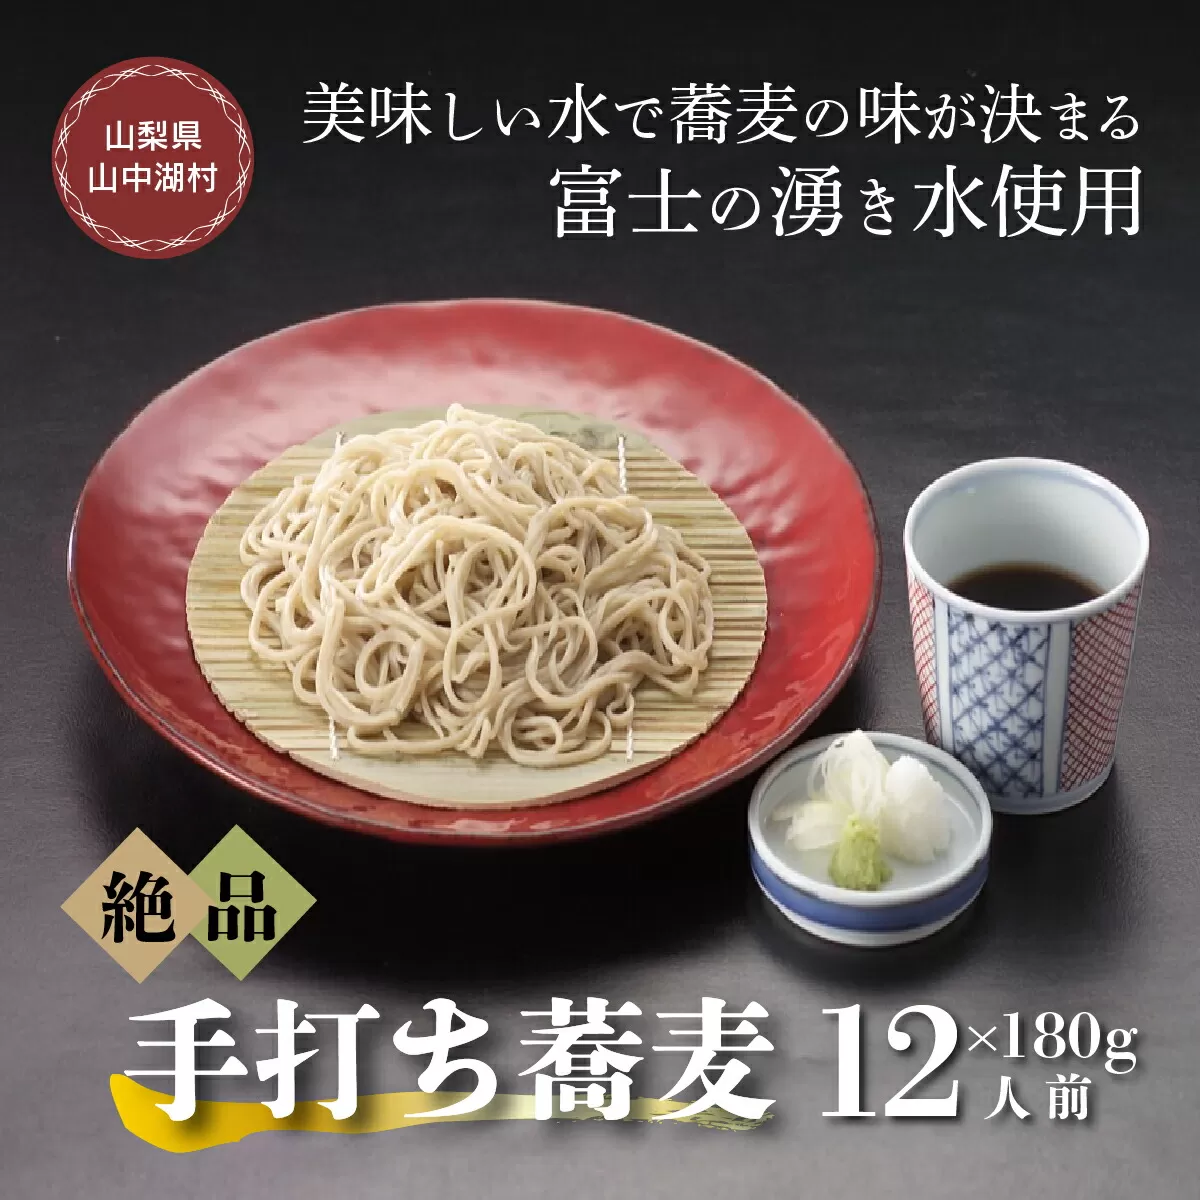 富士山の湧水冷凍手打ゆで蕎麦１２人前つゆ付電子レンジ調理専用商品 YU003